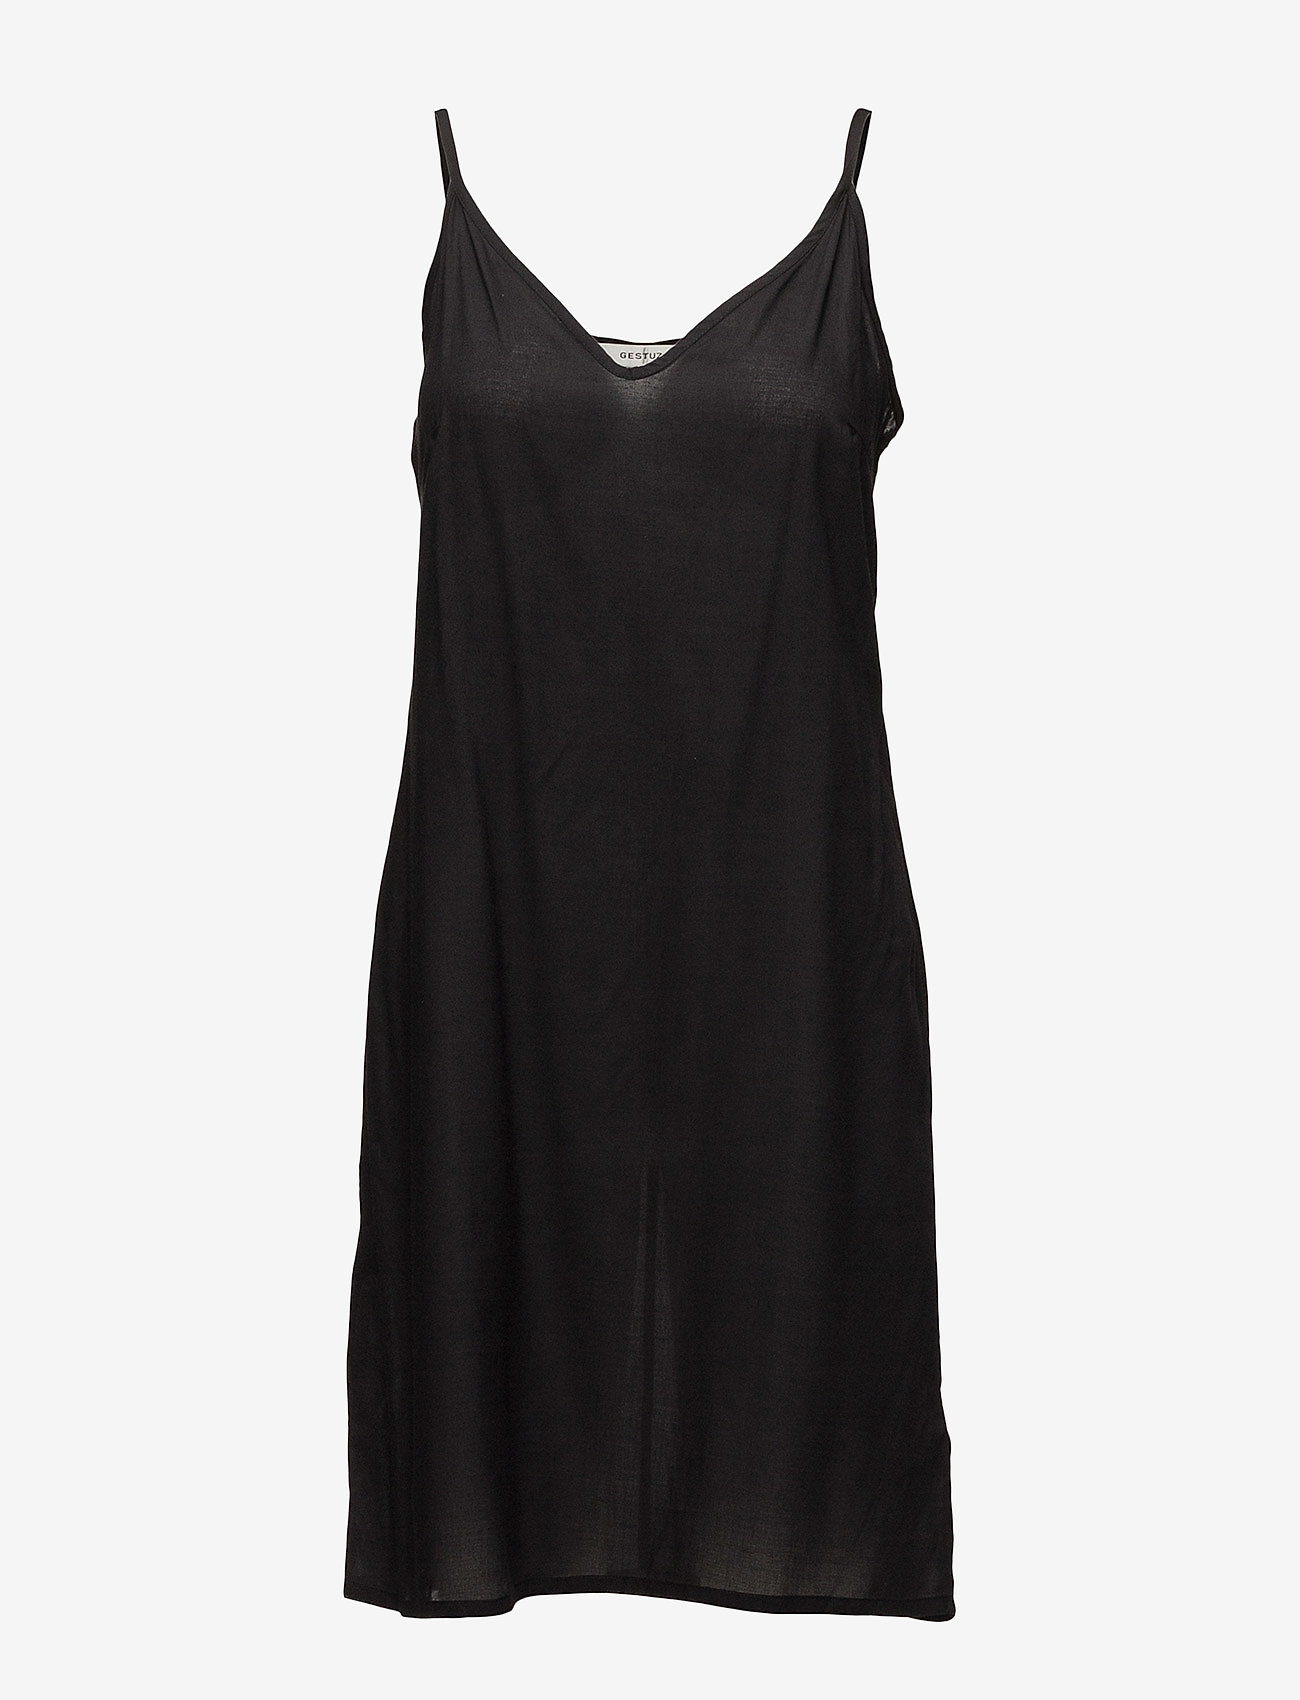 Baxtor Dress So18 (Black) - Gestuz mMs1co